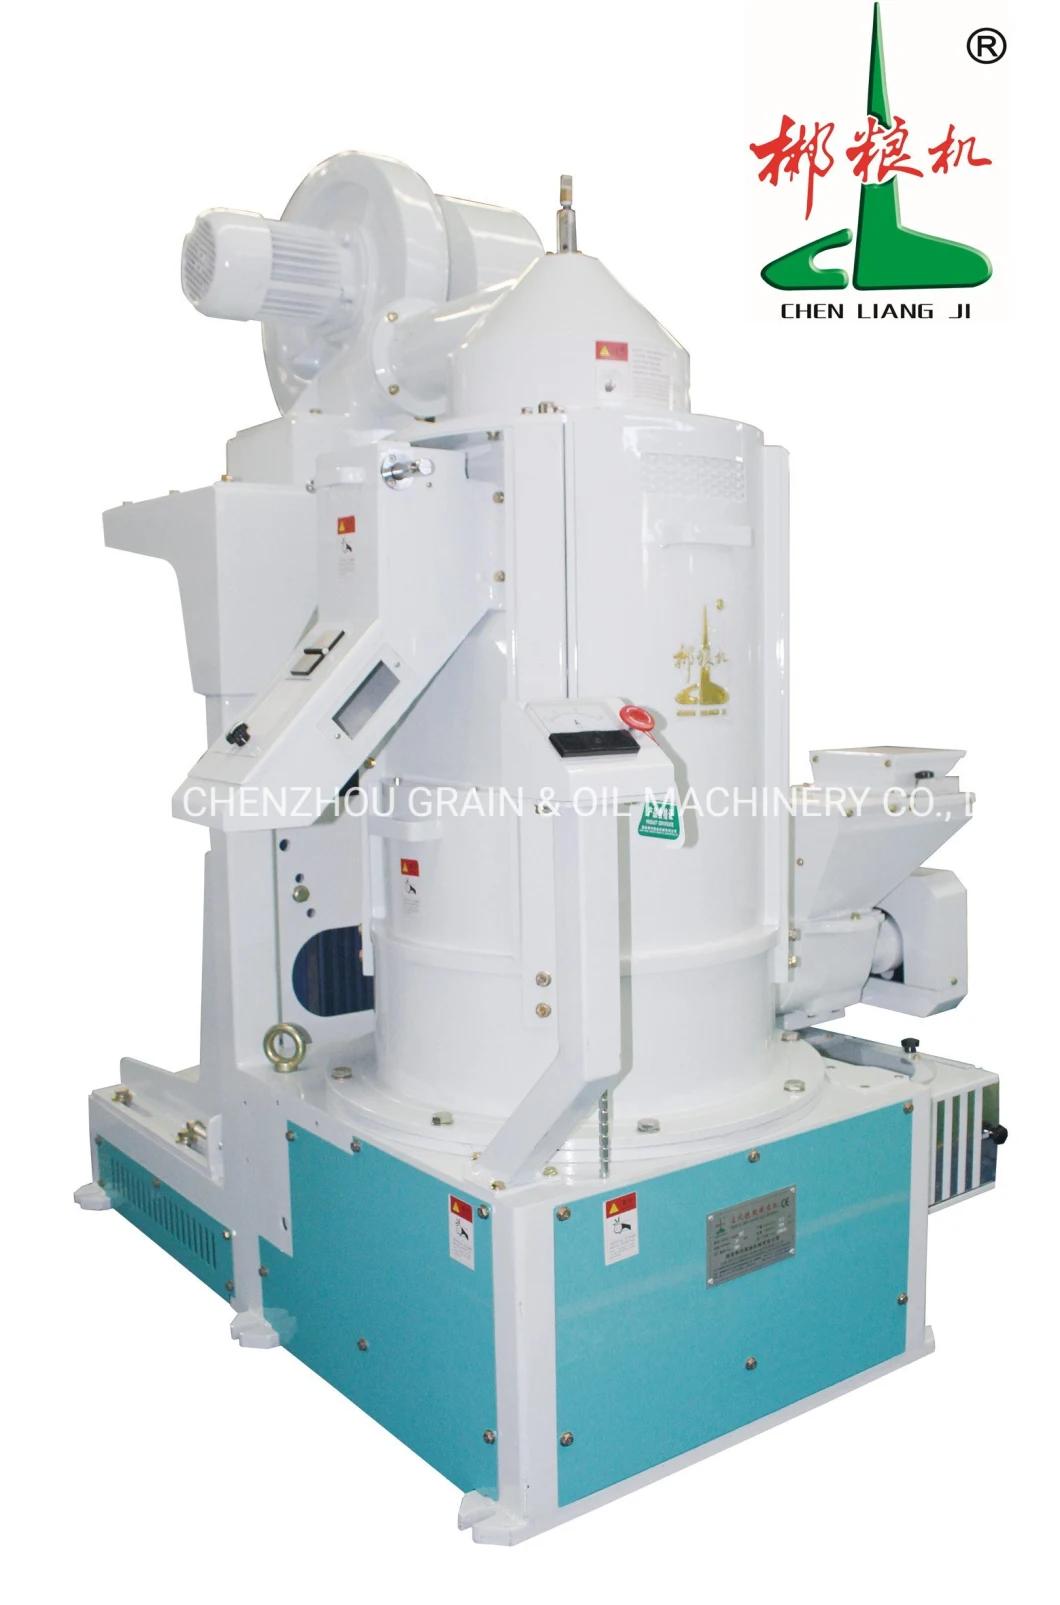 Clj New Vertical Type Whitener Mill Machine